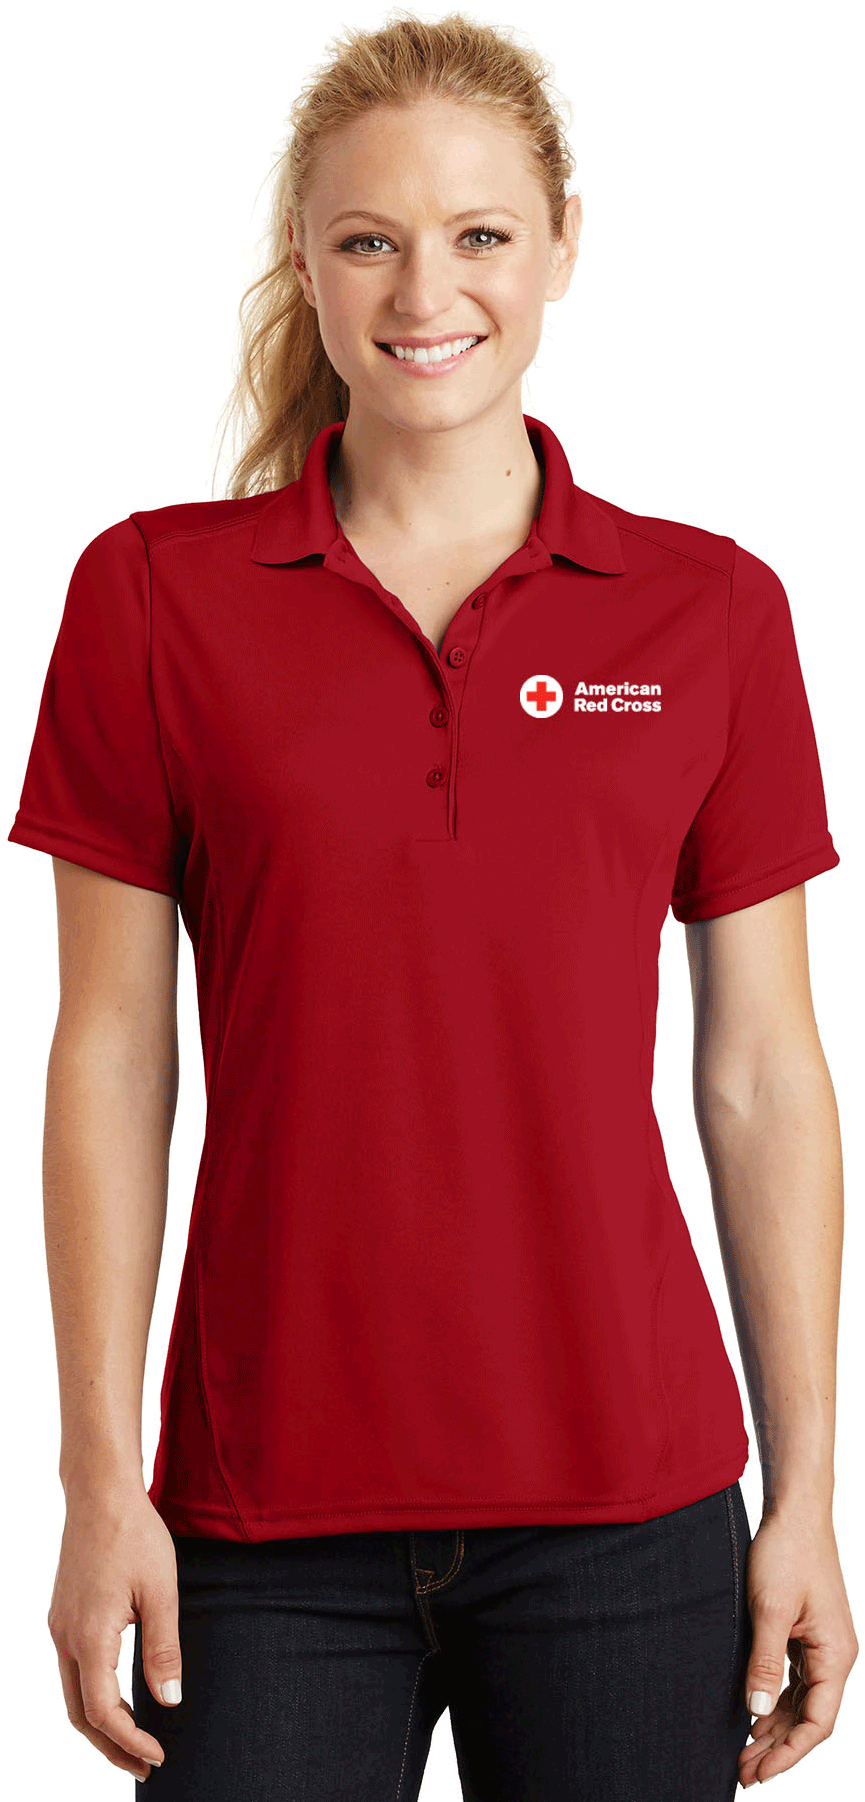 Red Cross Women Polo Shirt PNG